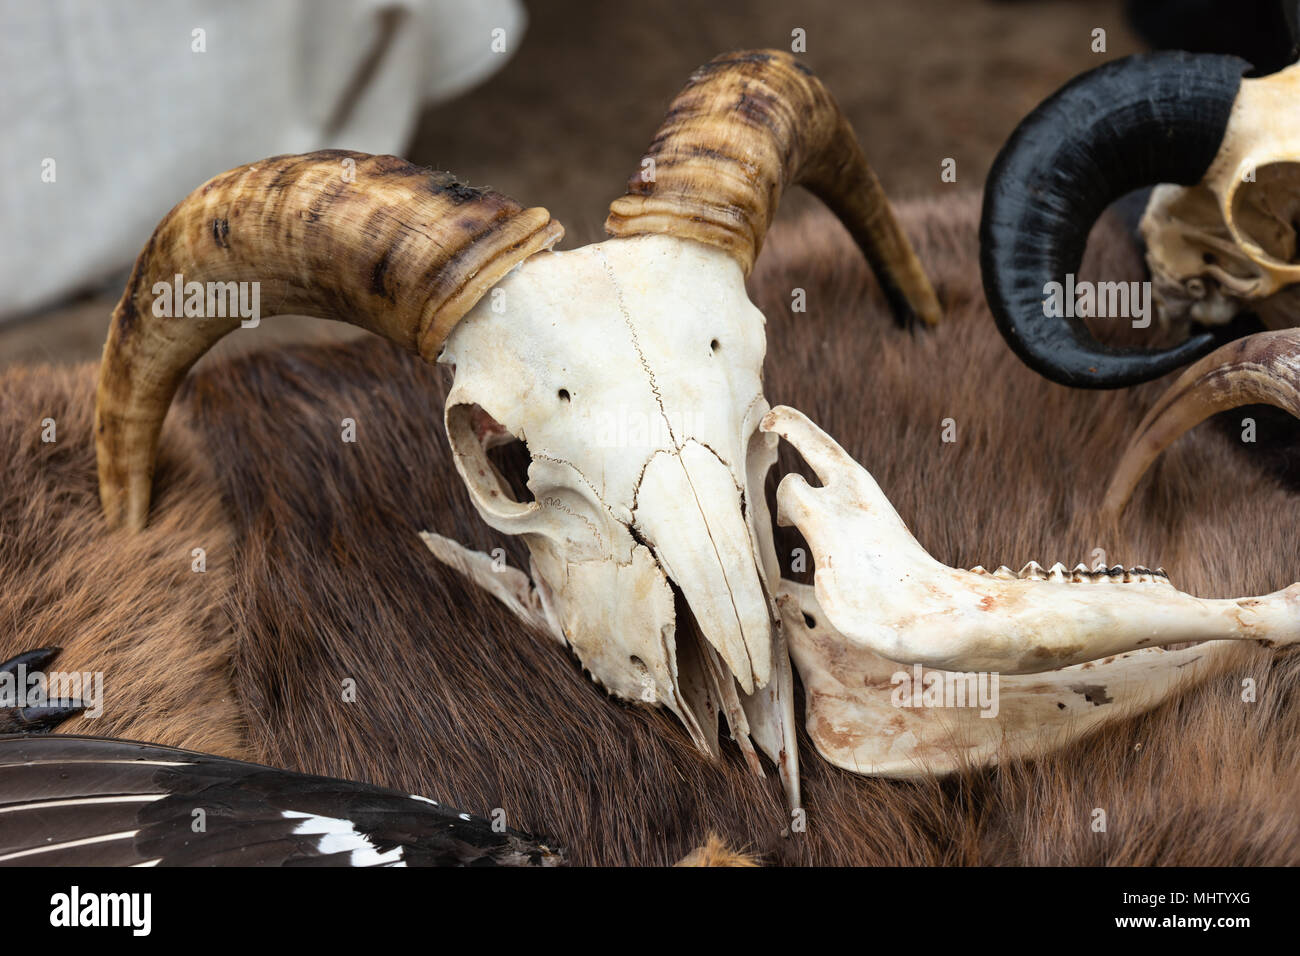 Crâne de chèvre avec de grandes cornes se pose sur une peau d'animal de couleur brune. Accessoires Médiévaux Banque D'Images